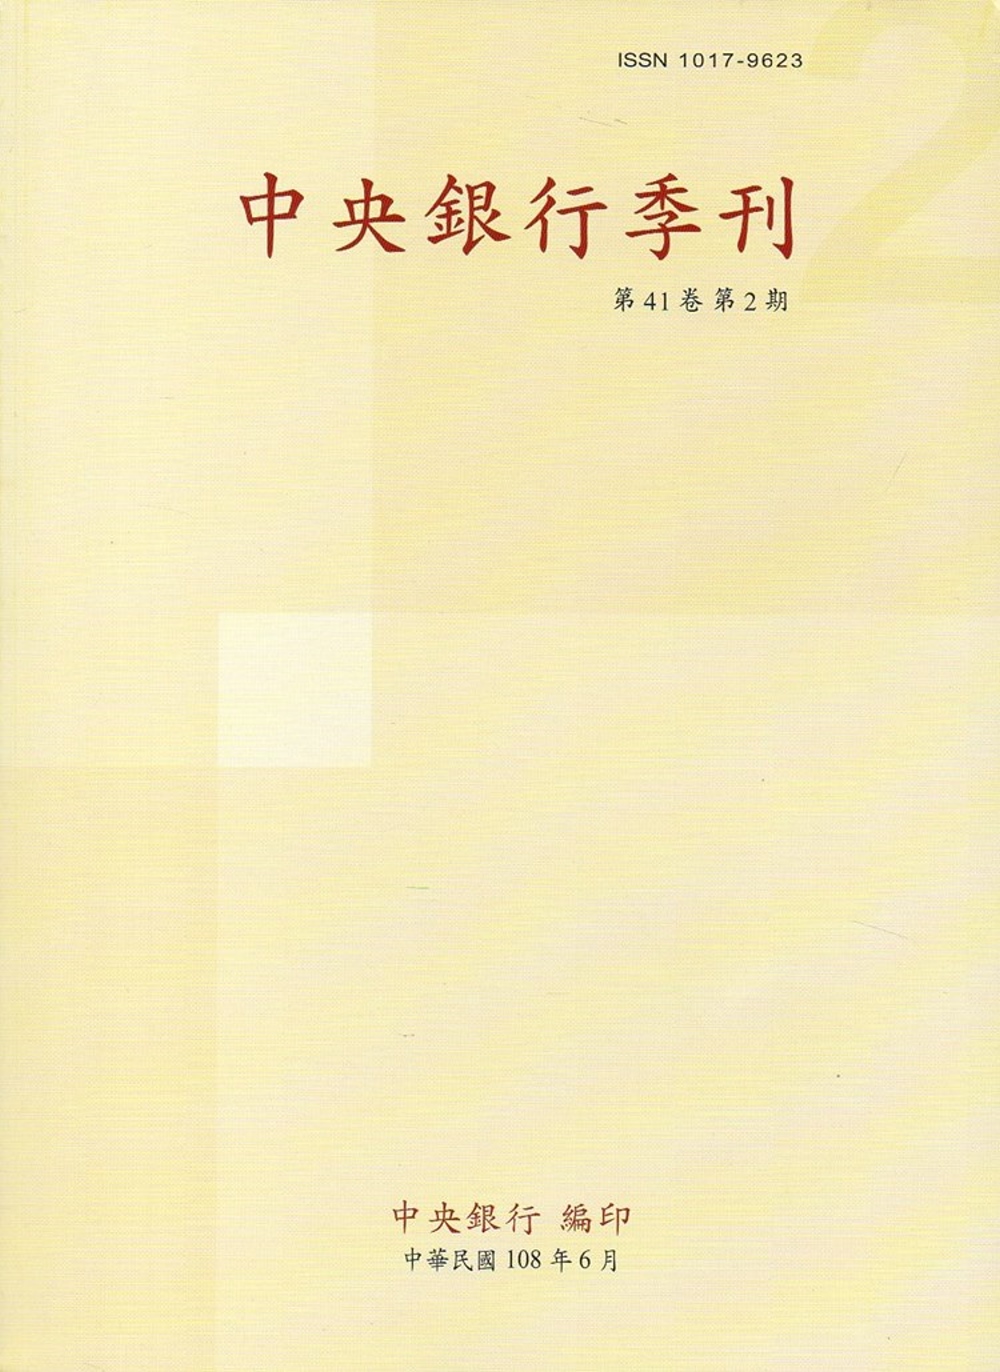 中央銀行季刊41卷2期(108.06)